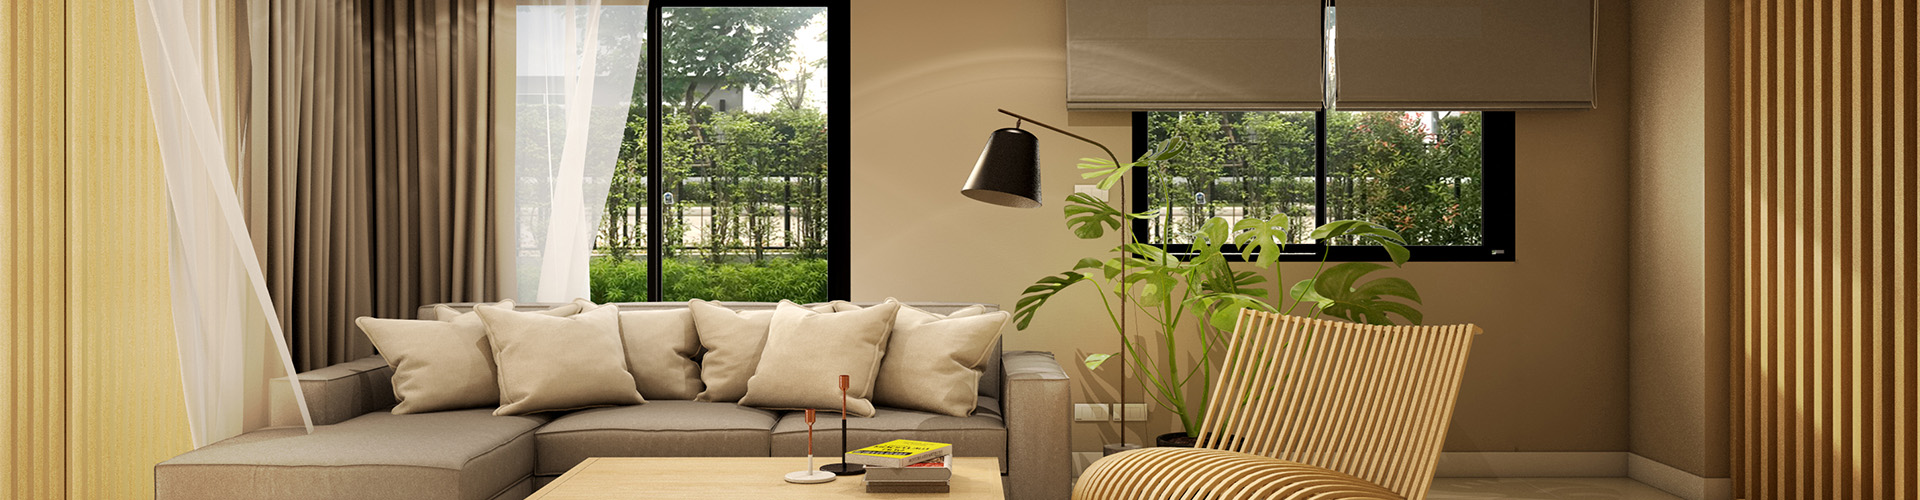 Best Living Room interior designers in Bangalore